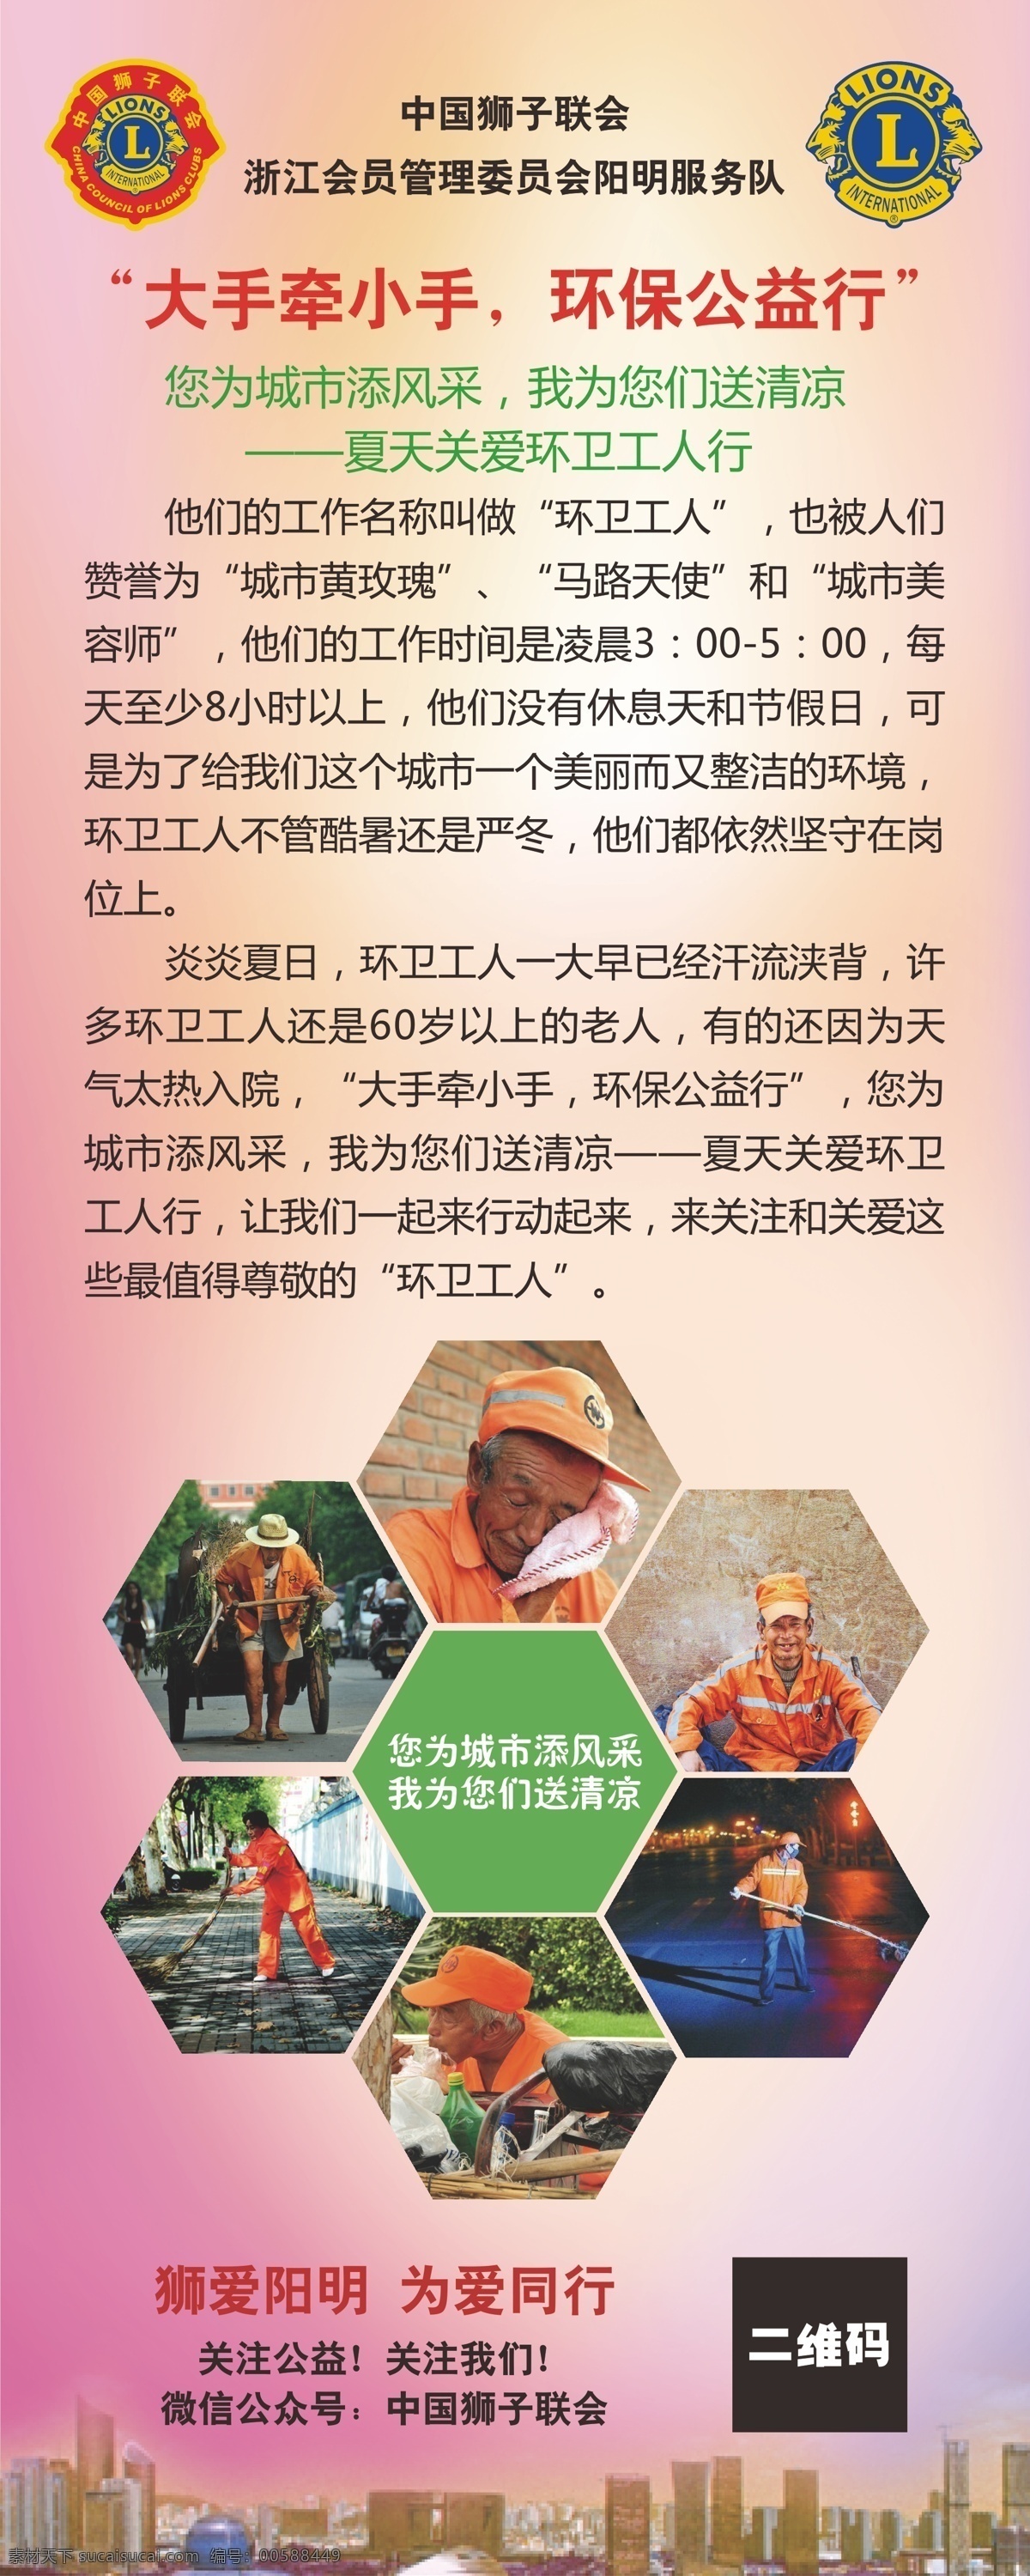 狮子会联会 大手牵小手 环保公益行 中国狮子联会 关爱环卫工人 为爱同行 环卫工人 展架 易拉宝